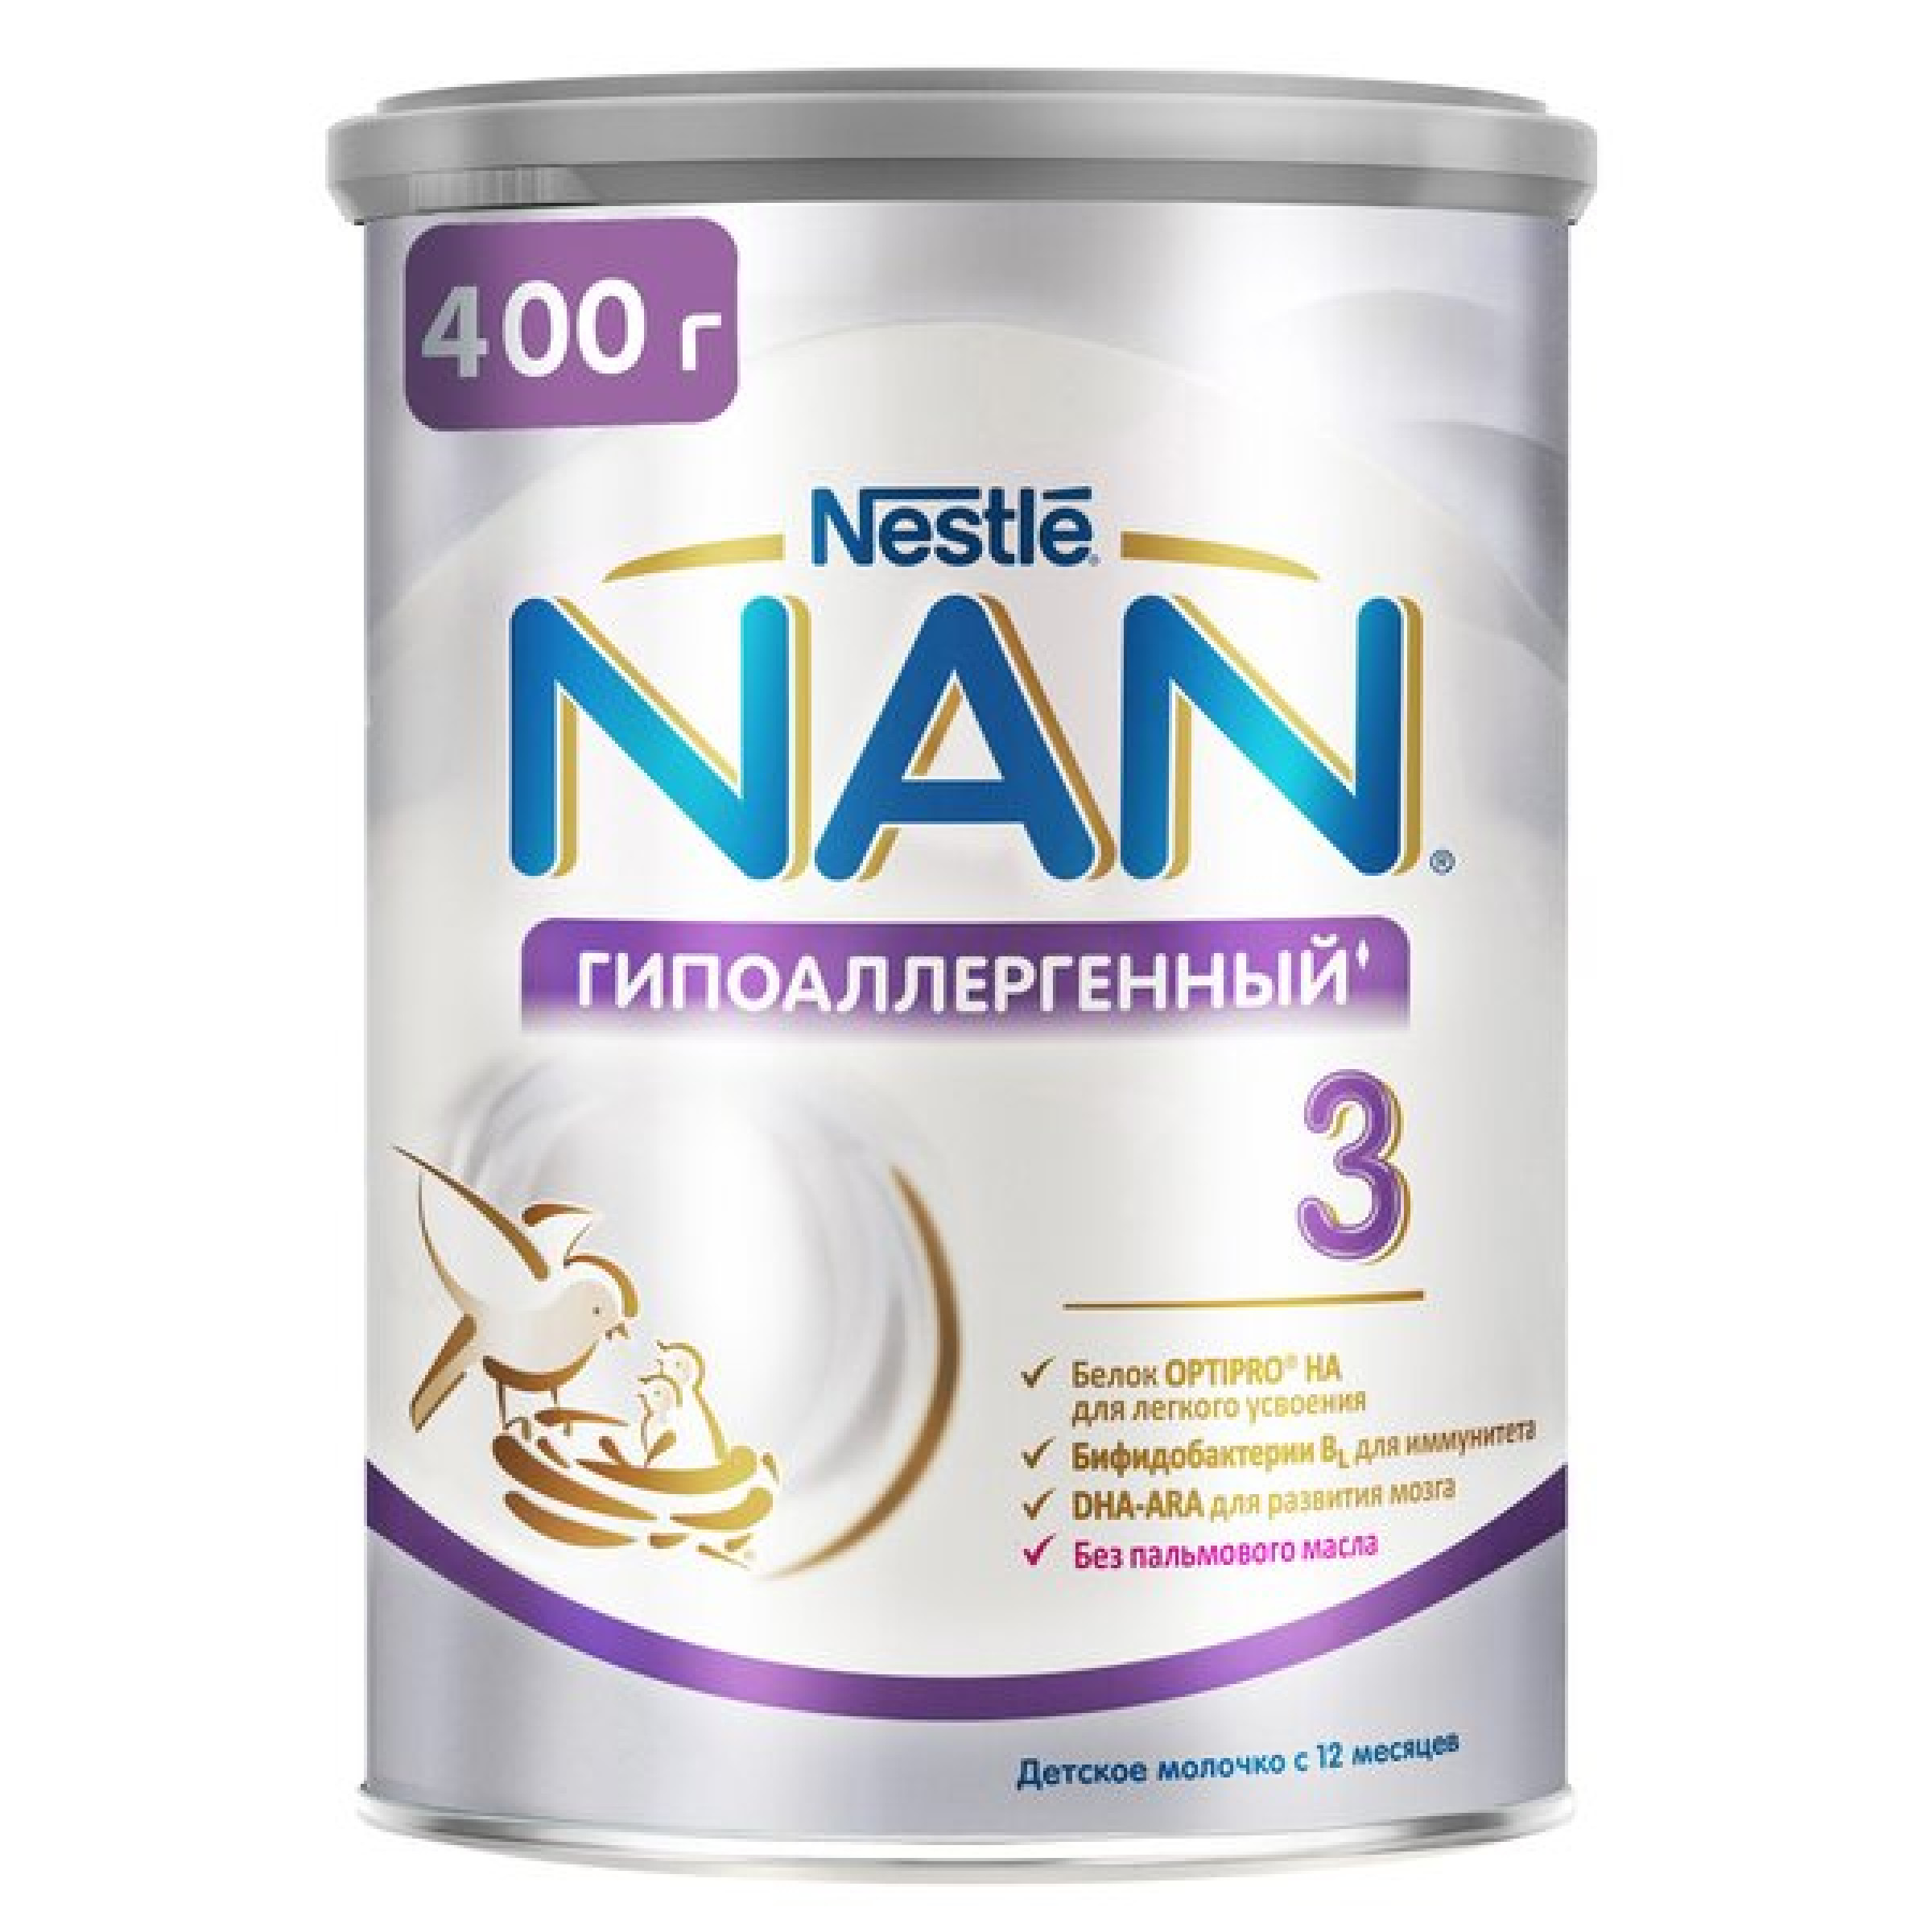 Детское молочко NAN Гипоаллергенный 3 Optipro HA с 12 мес., 400 гр